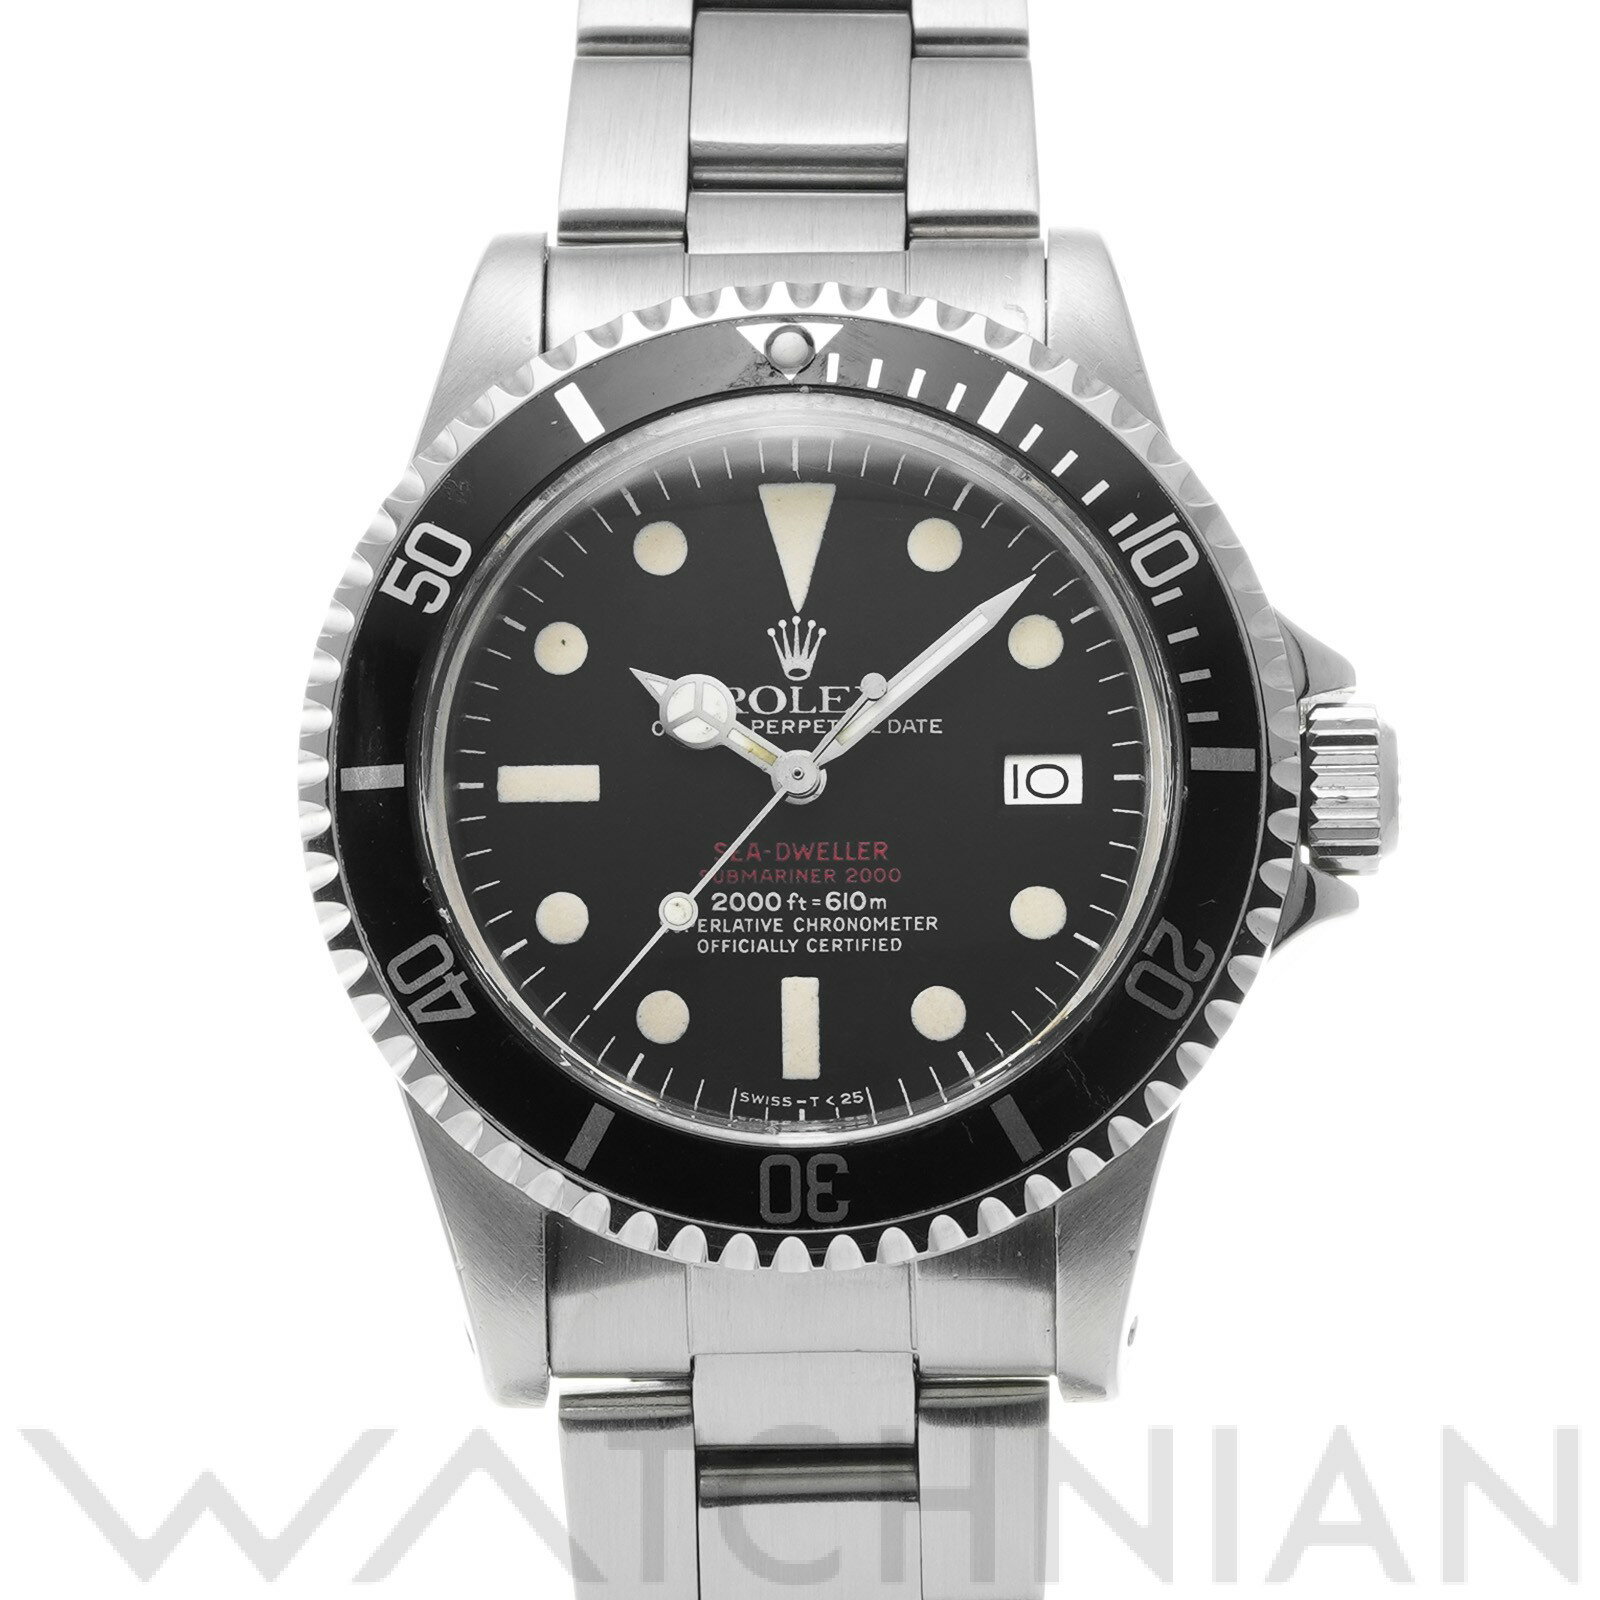 【中古】 ロレックス ROLEX シードゥエラー mark4 1665 42番台(1976年頃製造) ブラック メンズ 腕時計